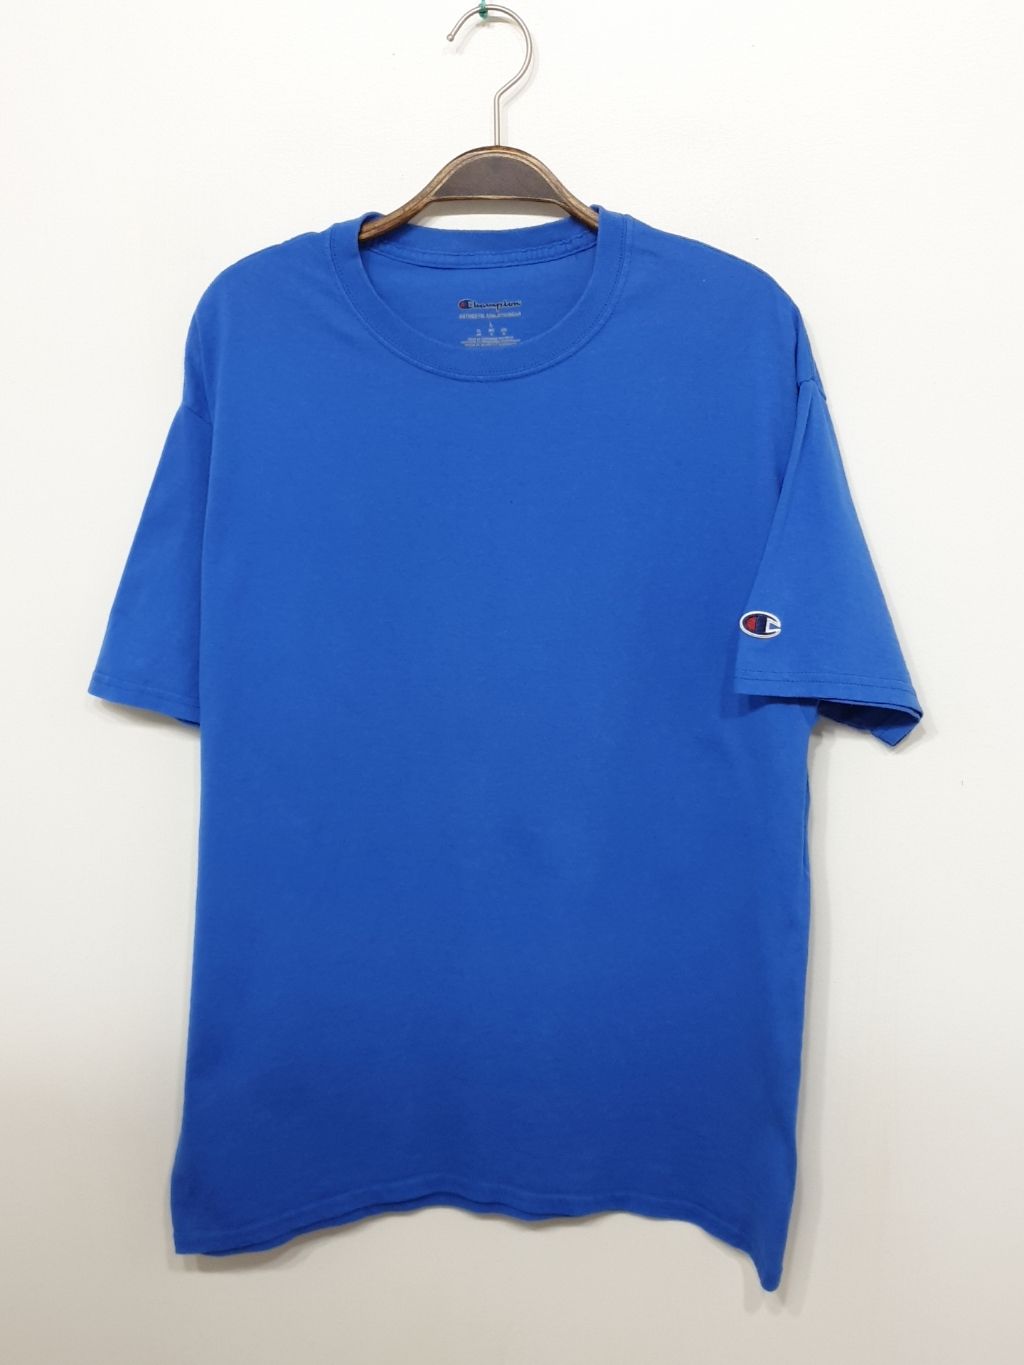 (M) 챔피온 반팔티 블루 무지 면티셔츠 라운드